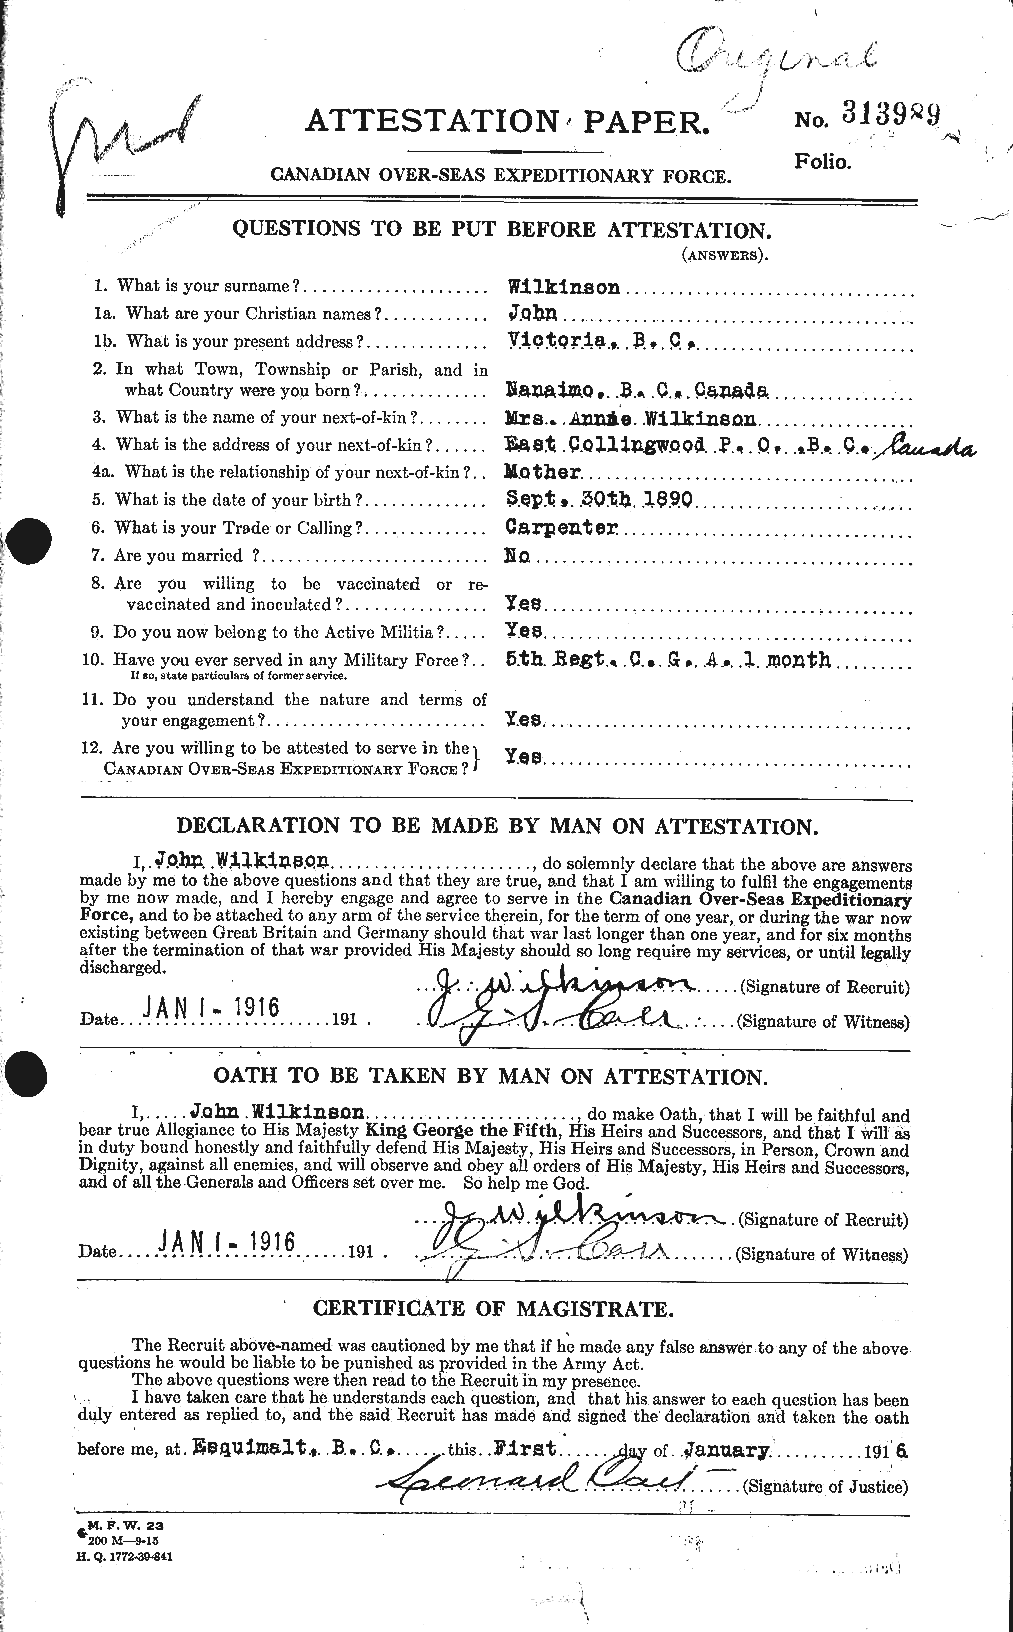 Dossiers du Personnel de la Première Guerre mondiale - CEC 673321a